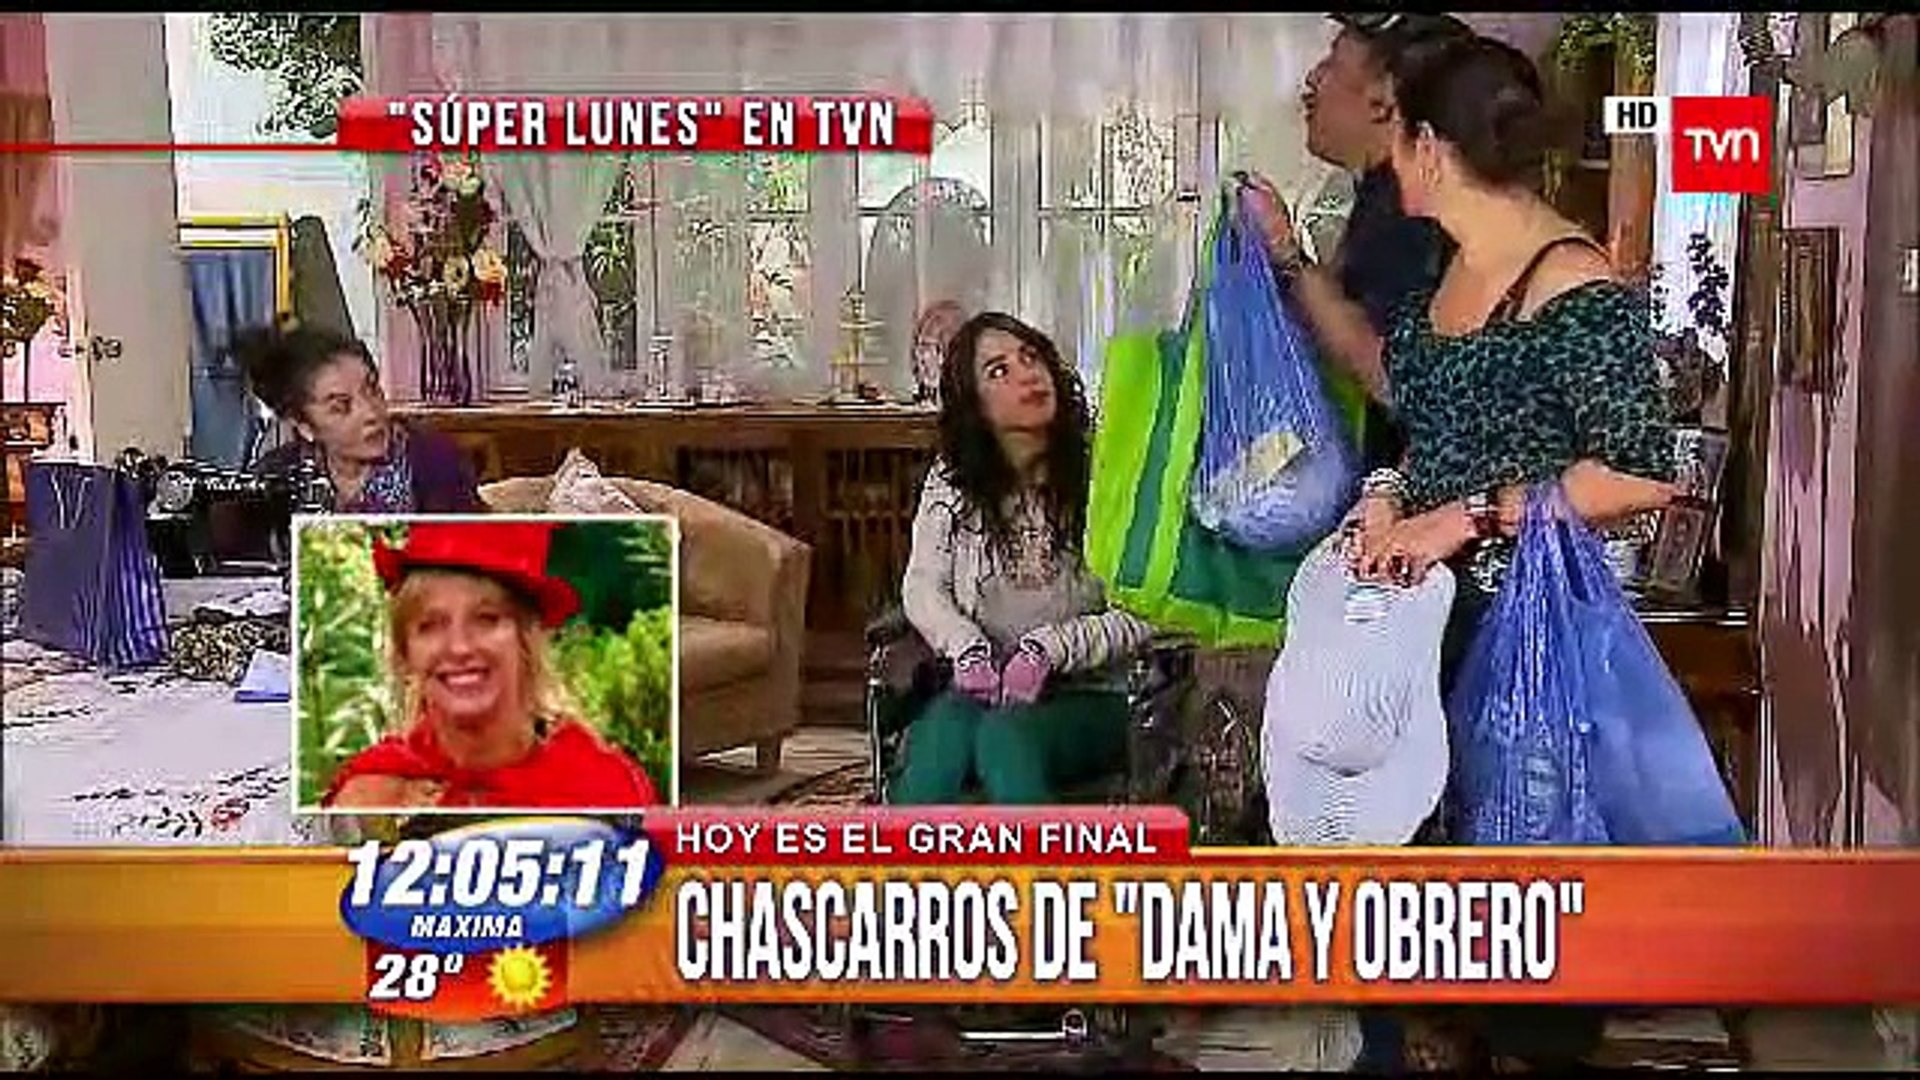 Chascarros teleserie "Dama y Obrero" en "Buenos Días a Todos" - TVN - video  Dailymotion